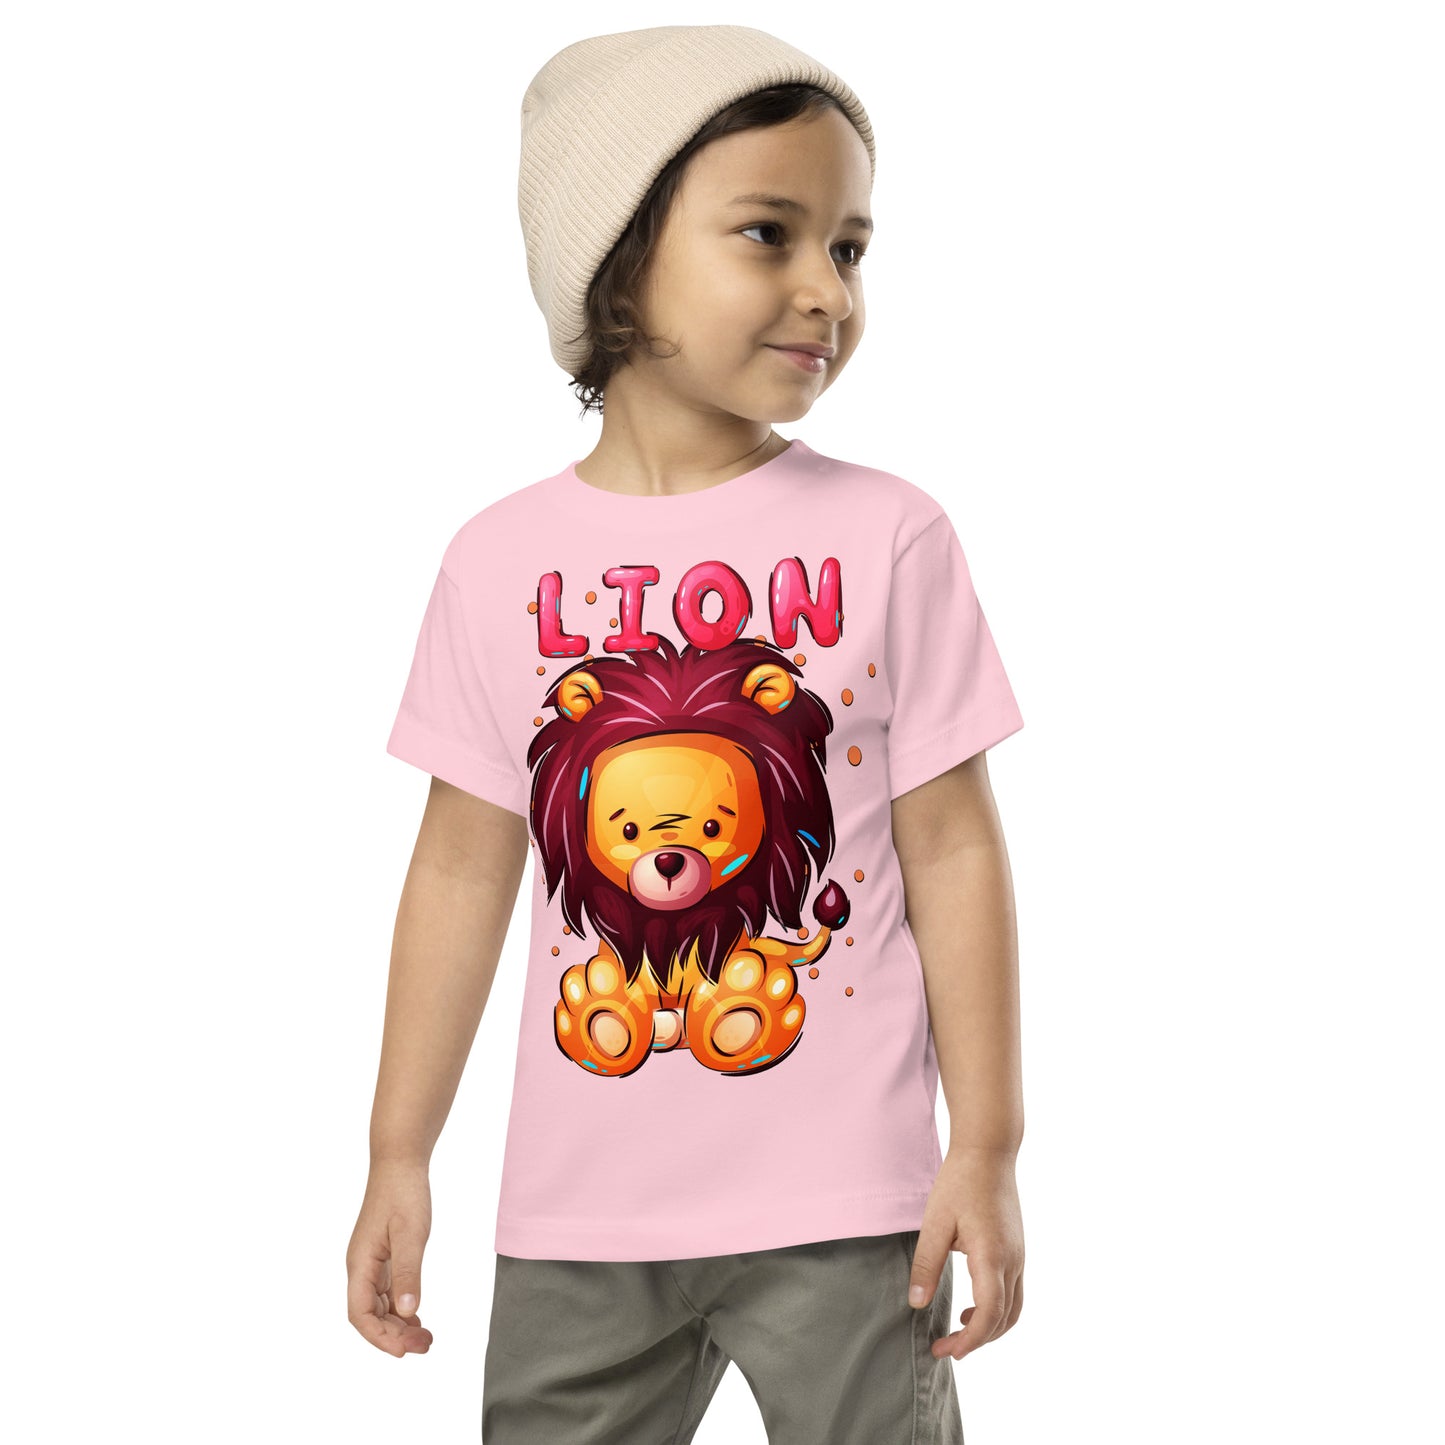 Cute Lion T-shirt, No. 0350